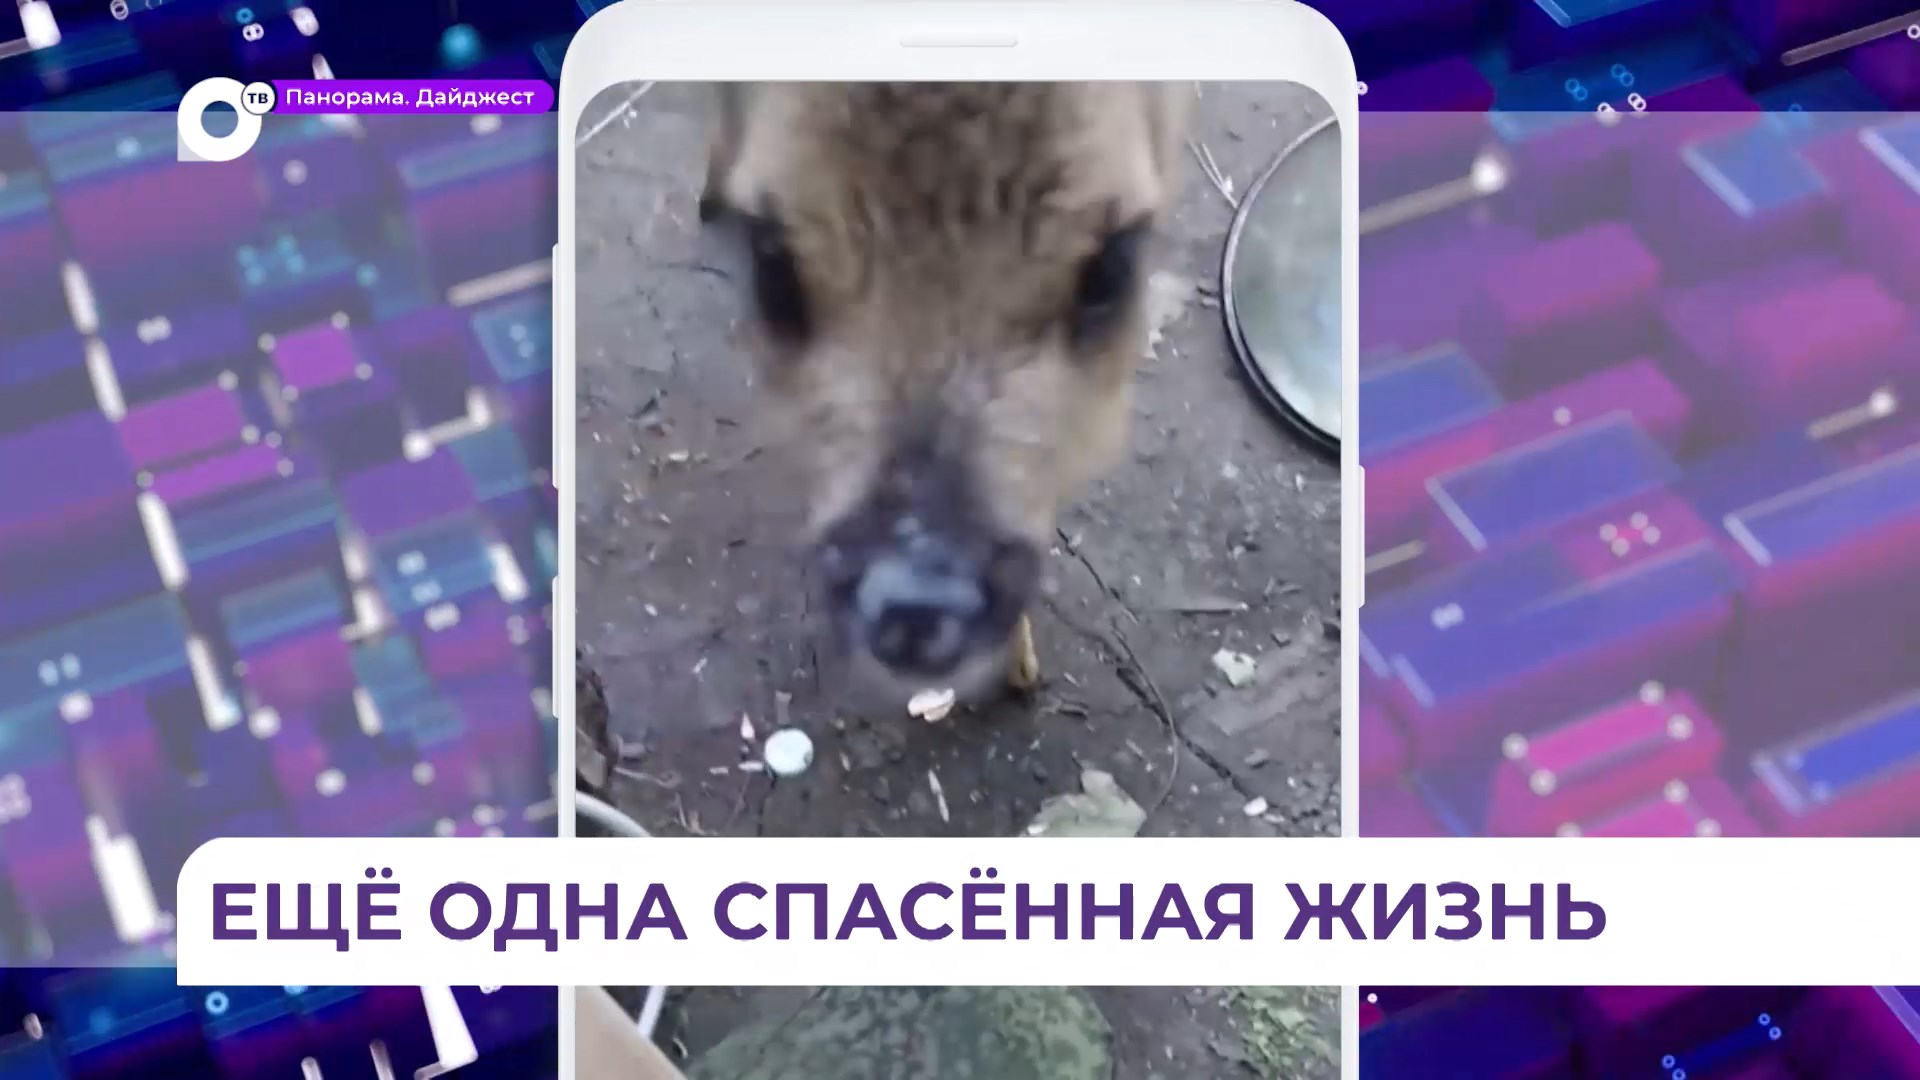 Всероссийская интернет-слава досталась другу морпехов псу Бандиту